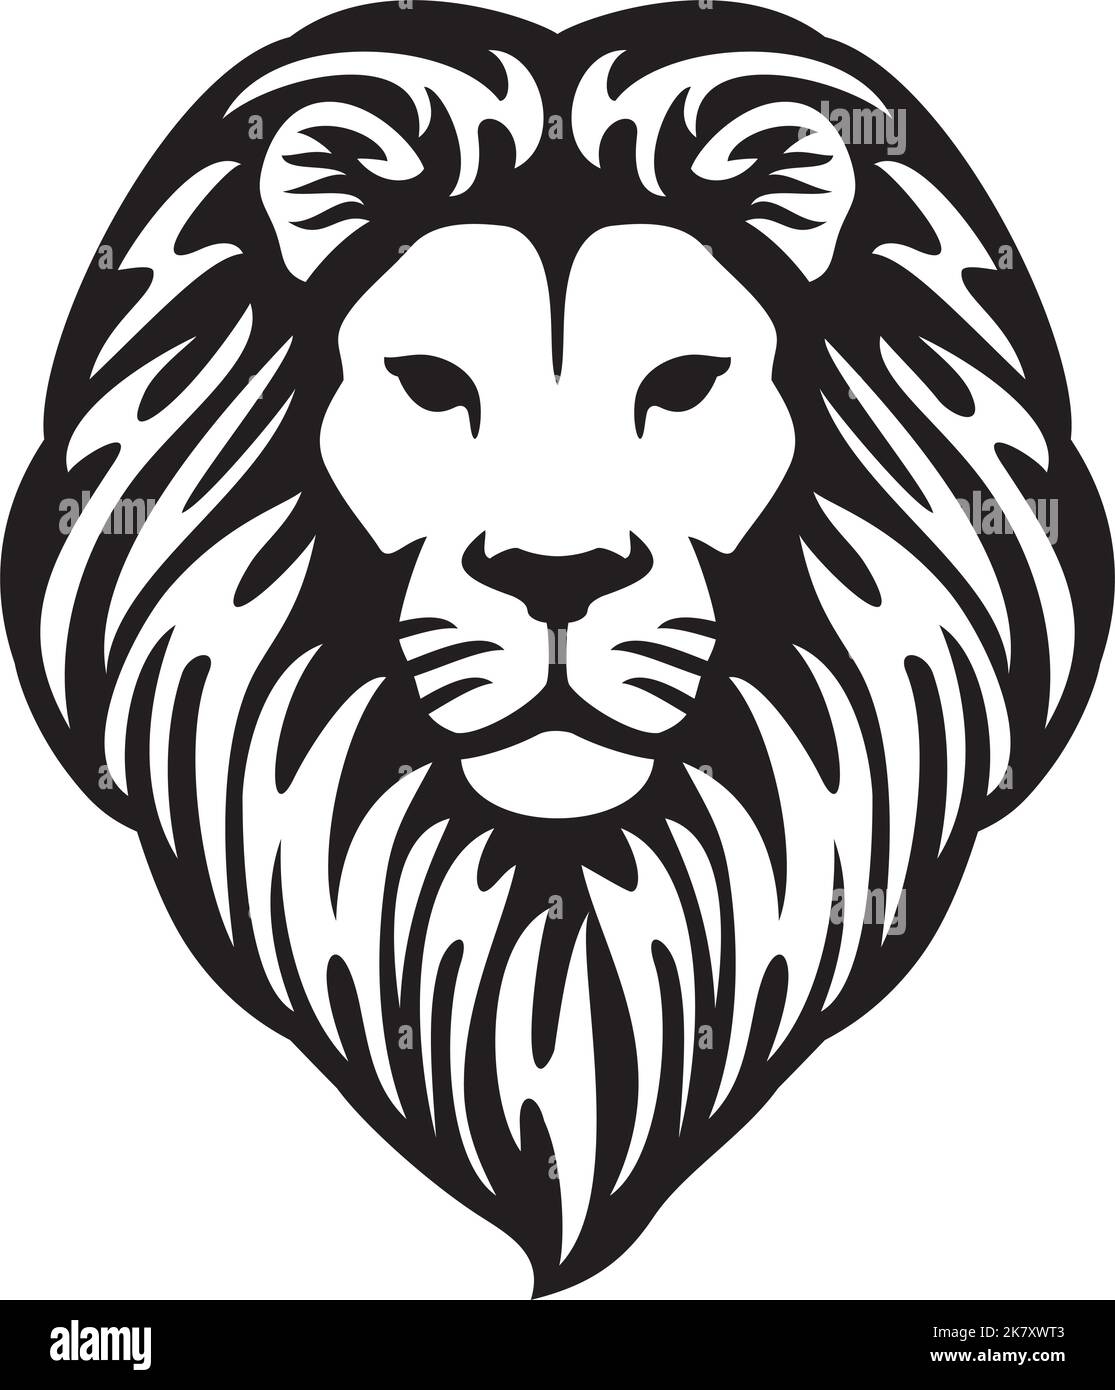 The Lion of Judah Head (Rastafarian Reggae Symbol). Vector illustration. Stock Vector